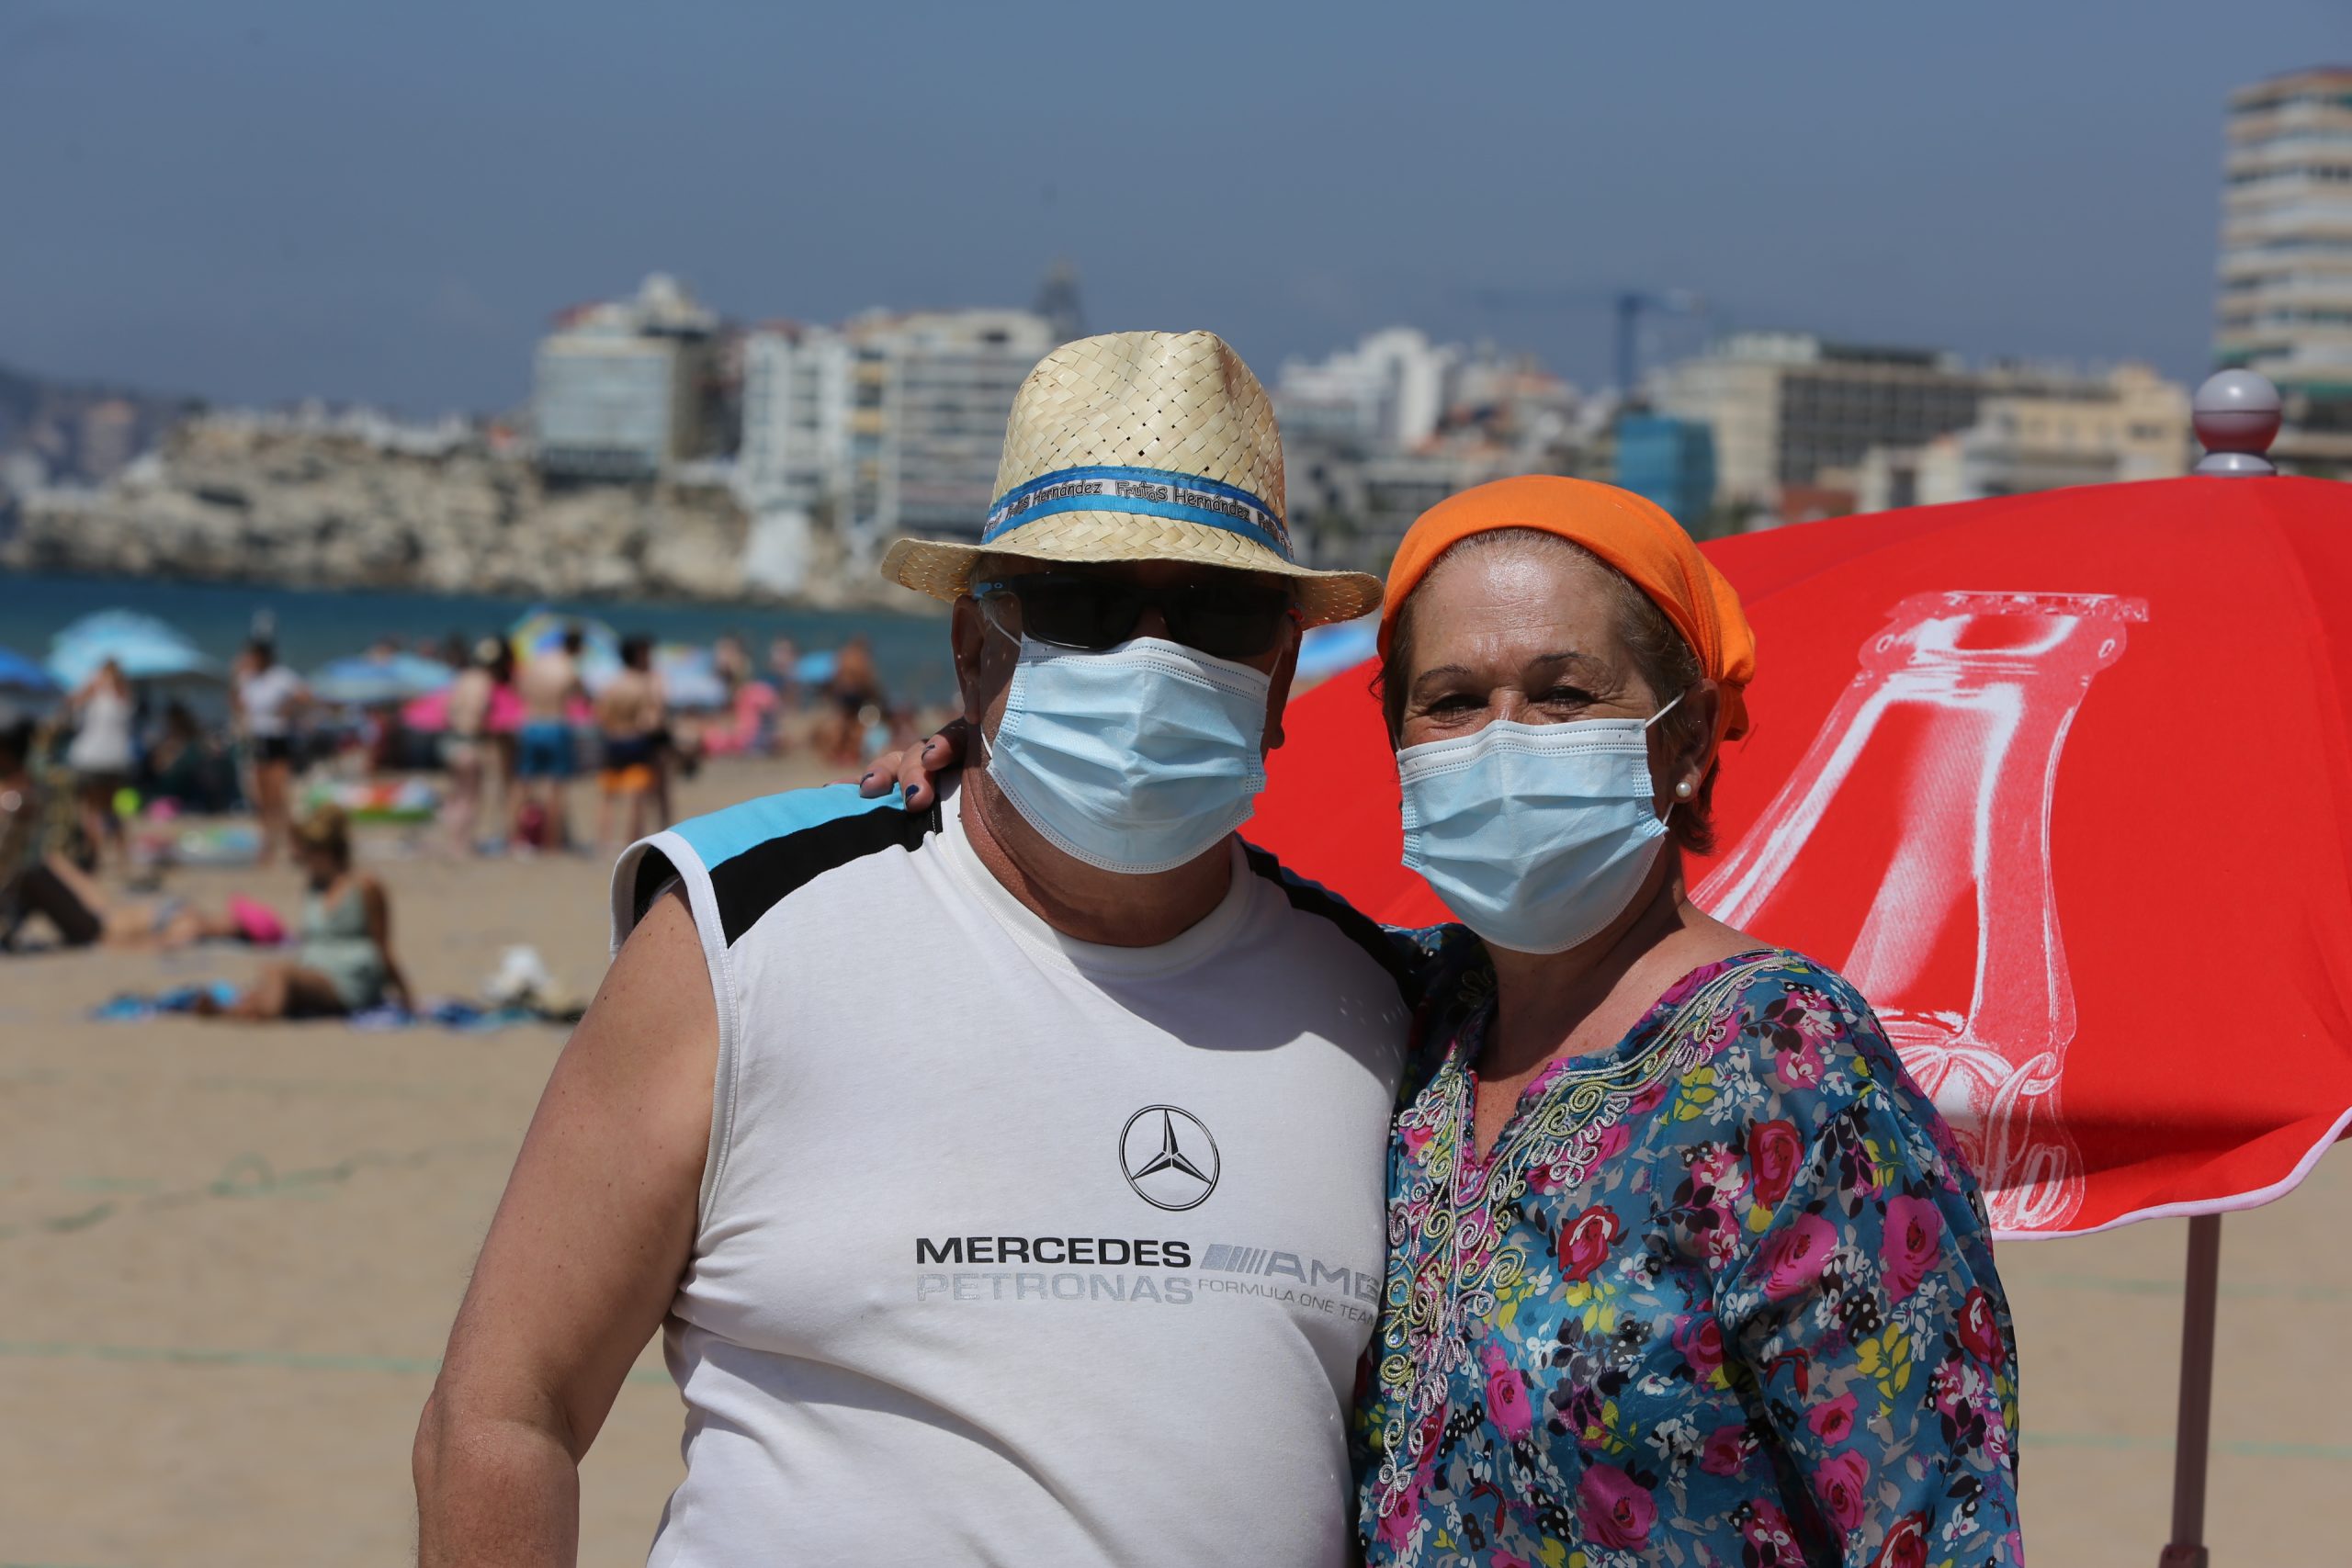 ¿Necesita ver a un médico en Andalucía, España, esta semana?  Use una máscara o la policía lo rechazará y le multarán.